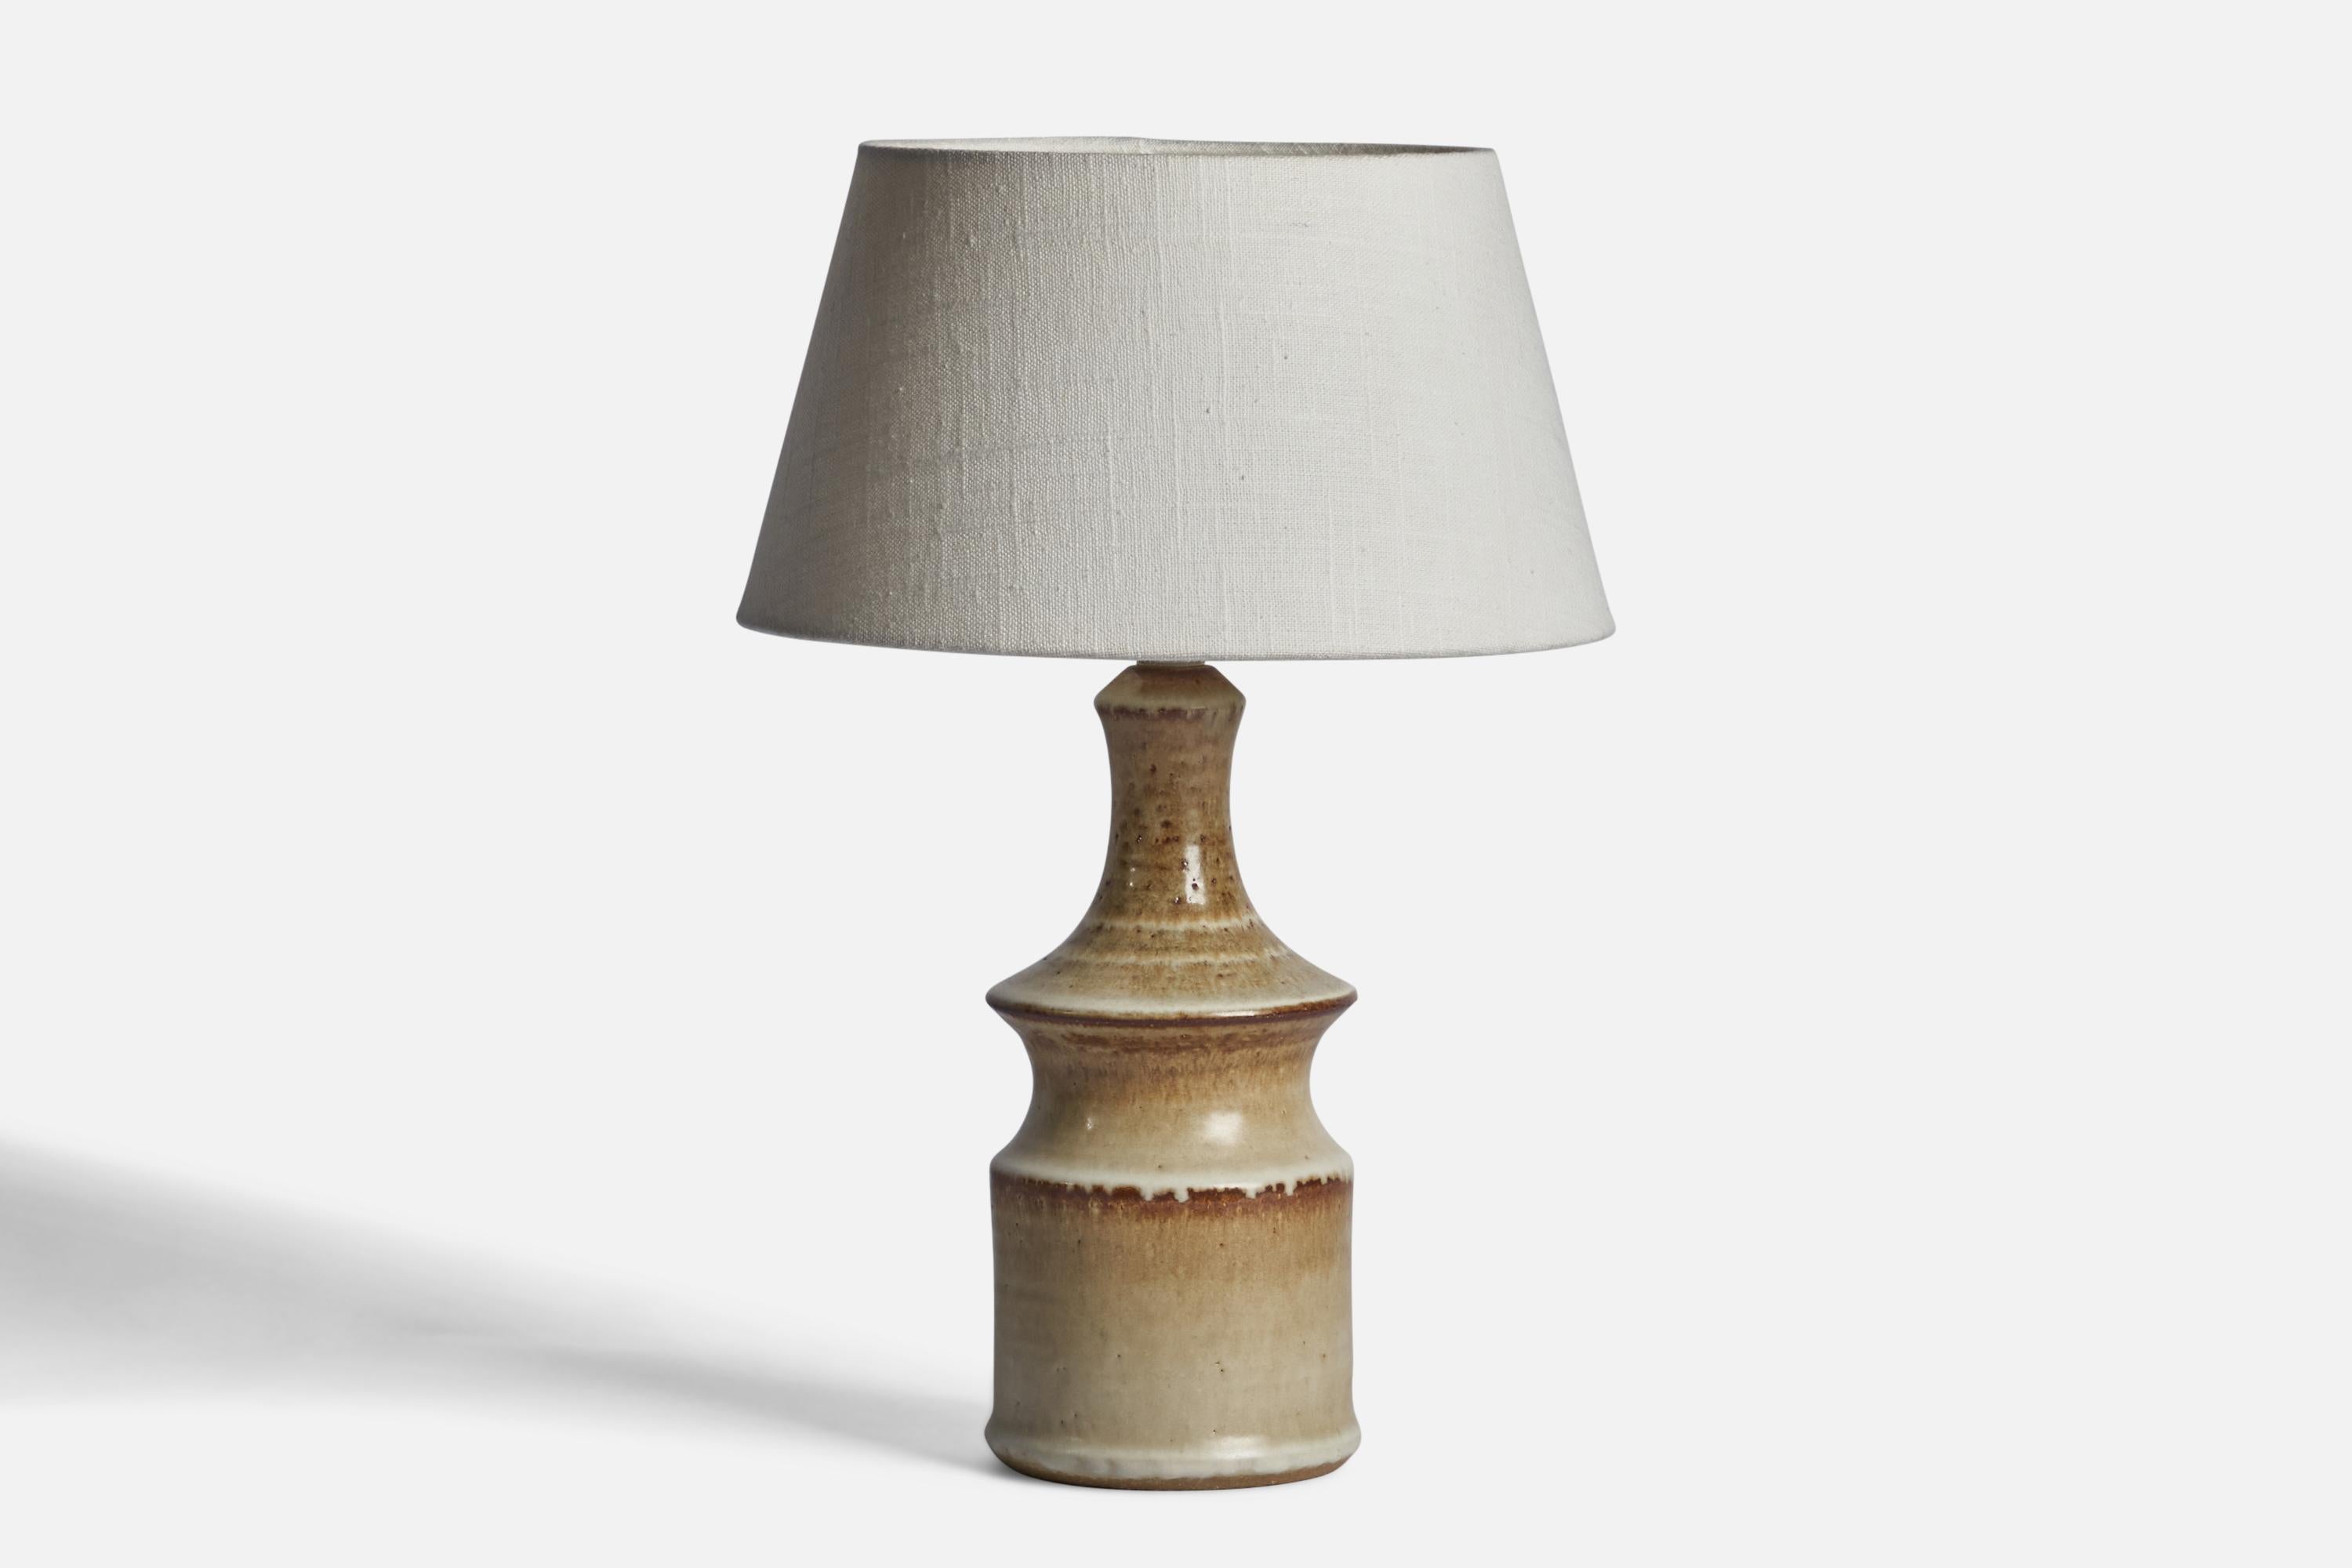 Tischleuchte aus Steingut, entworfen von Joseph Simon und hergestellt von Söholm, Dänemark, 1960er Jahre.

Abmessungen der Lampe (Zoll): 11,5